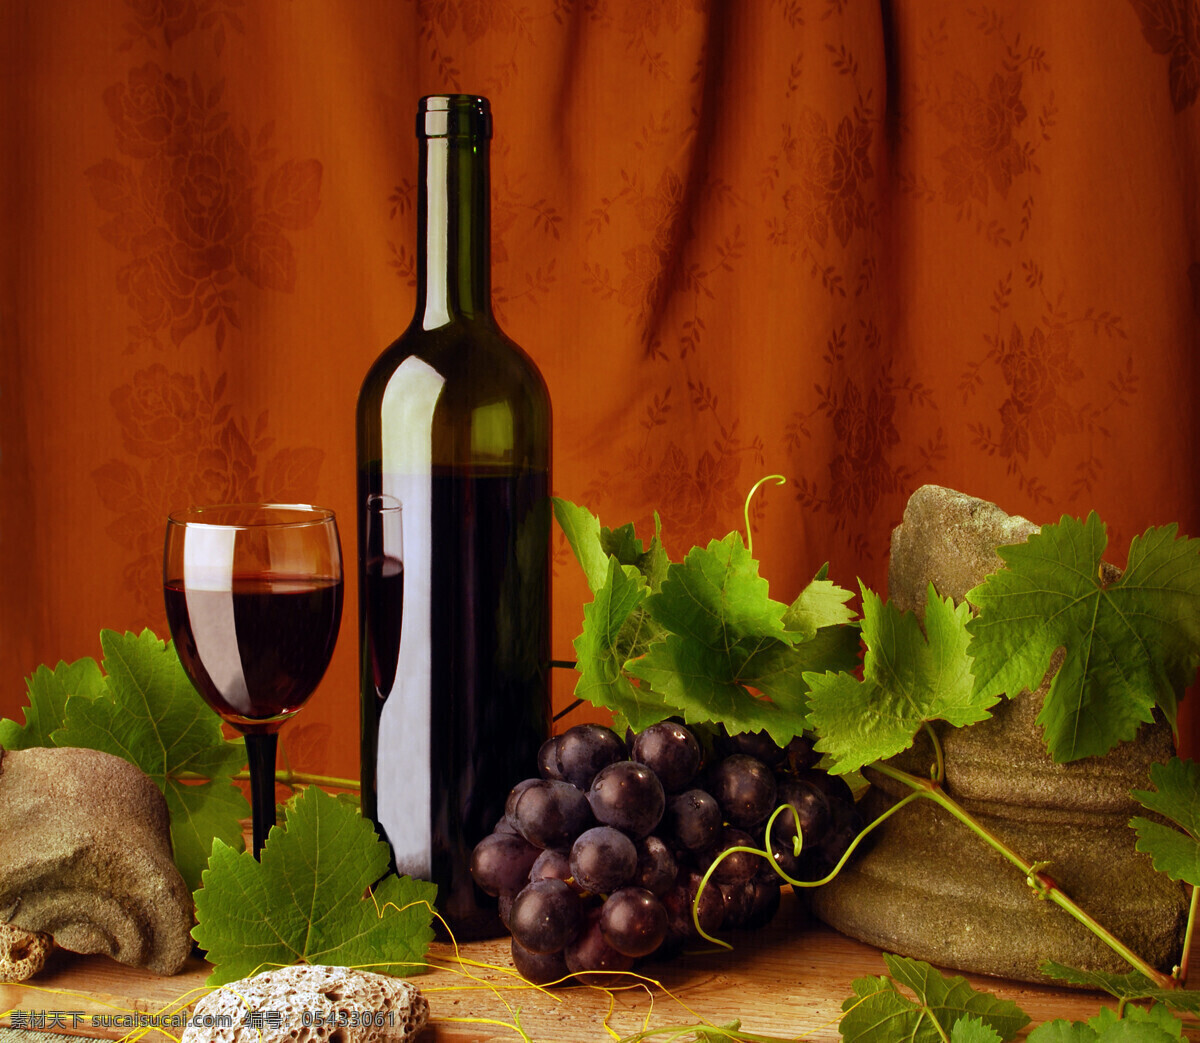 葡萄酒 紫 葡萄 酒瓶 酒杯 葡萄藤 紫葡萄 酒水 饮料 食物 食材 水果蔬菜 餐饮美食 红色